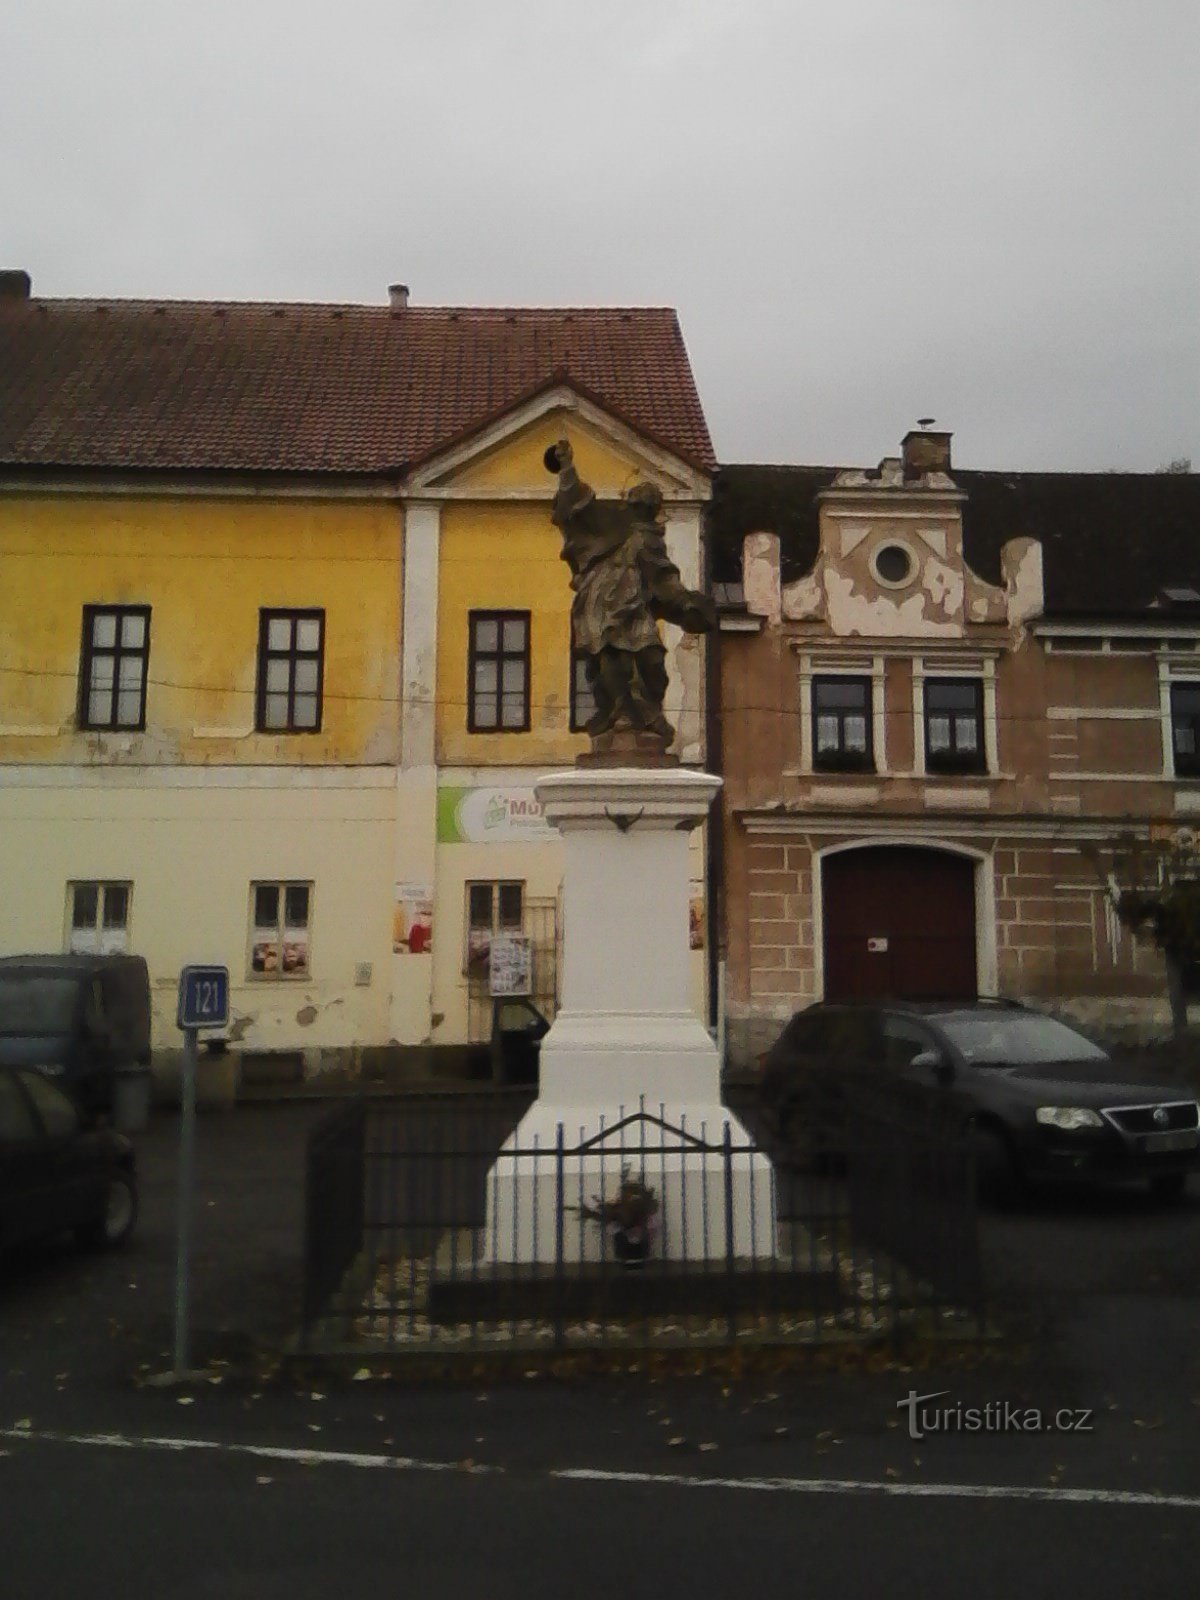 2. Statuia Sfântului Ioan Nepomuk din Sedlec.